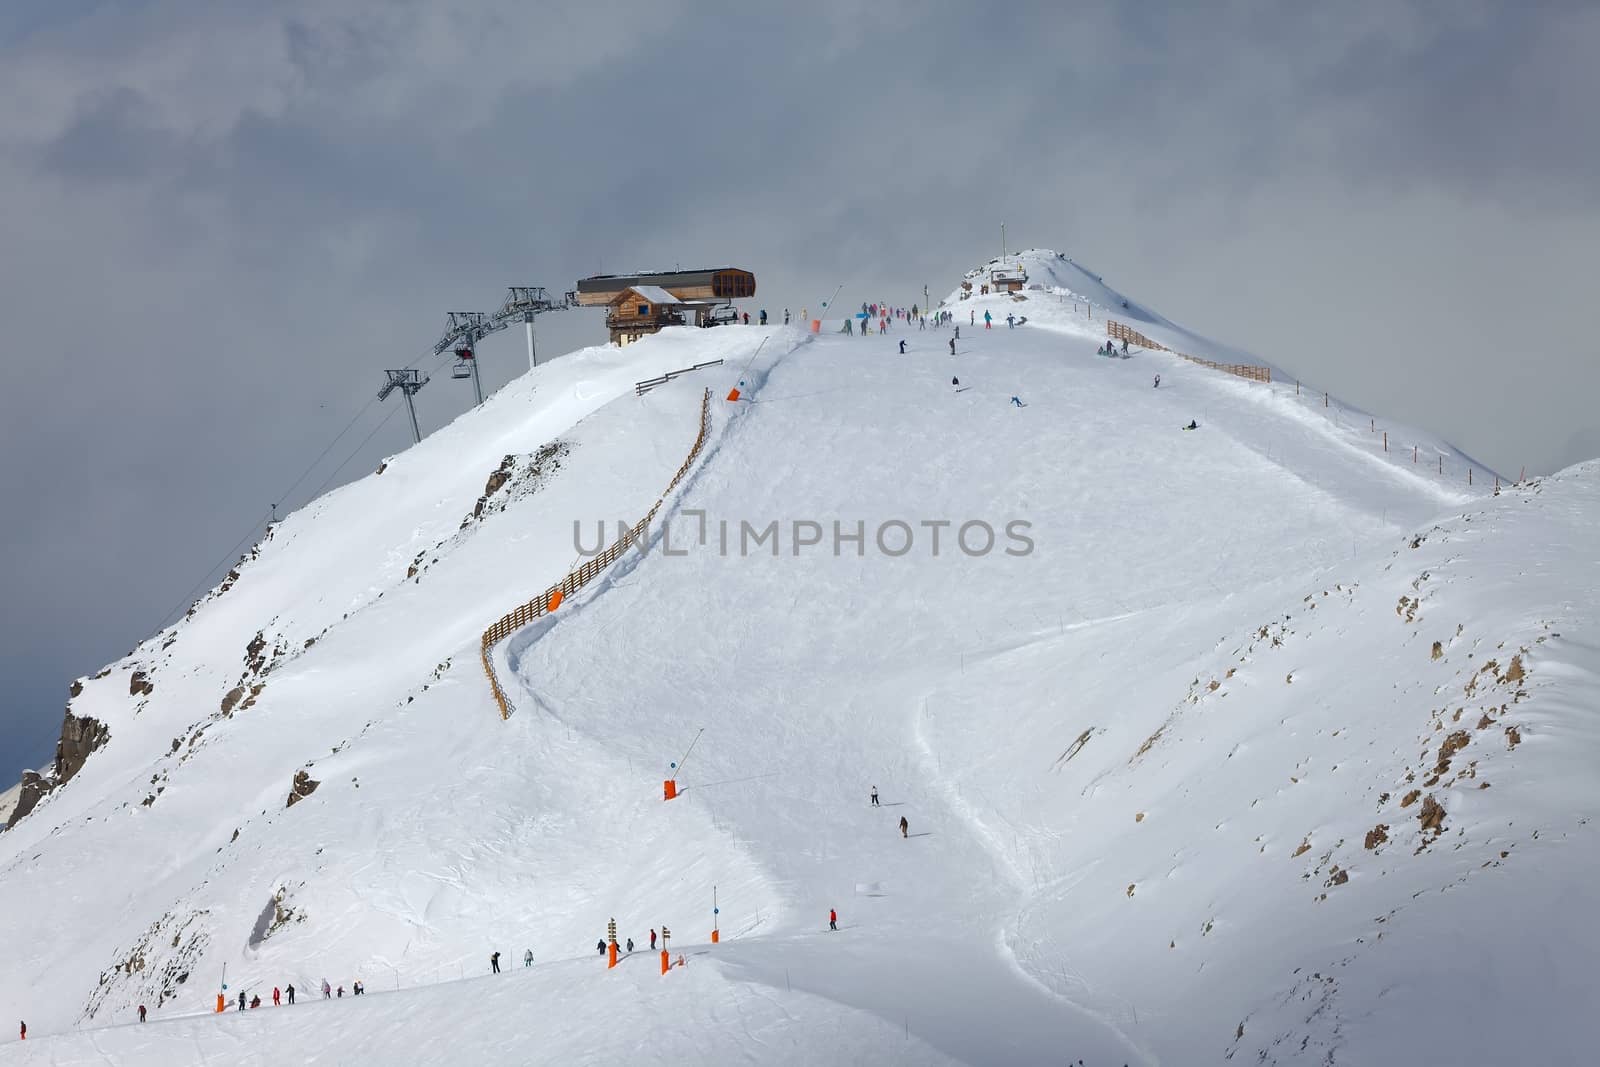 Ski slope in cold weather